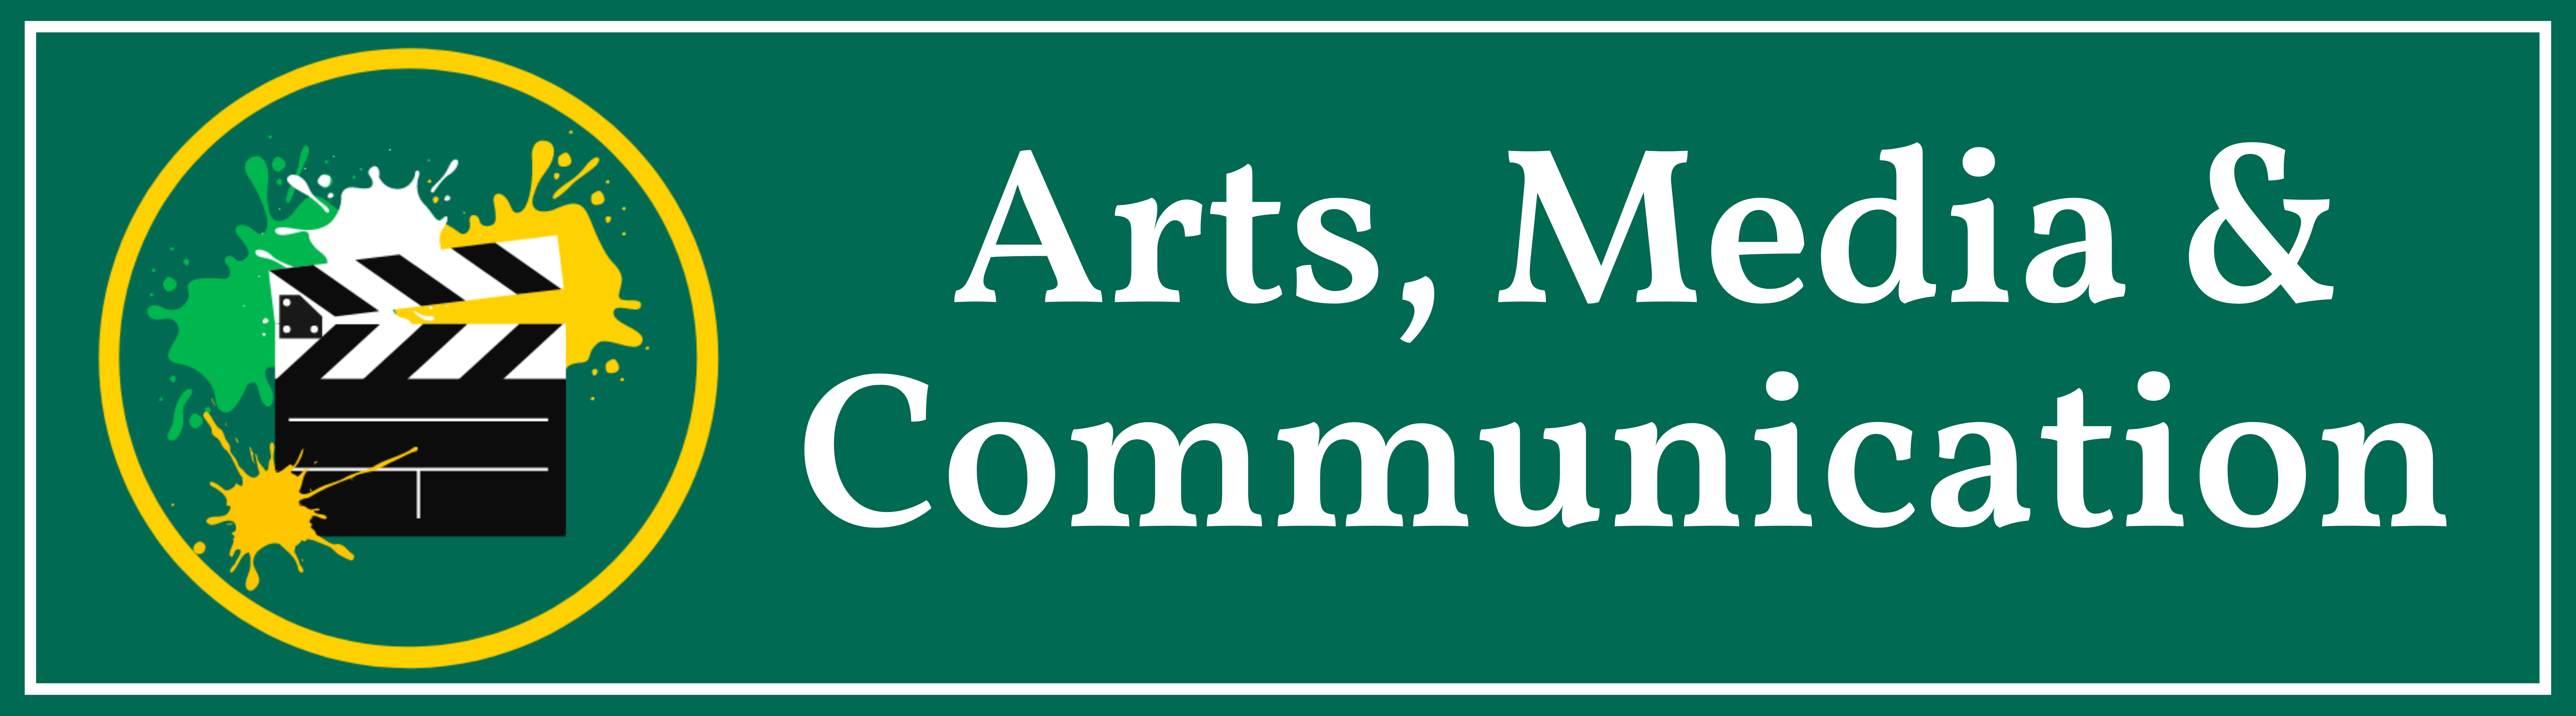 Art, Media & Communications Community